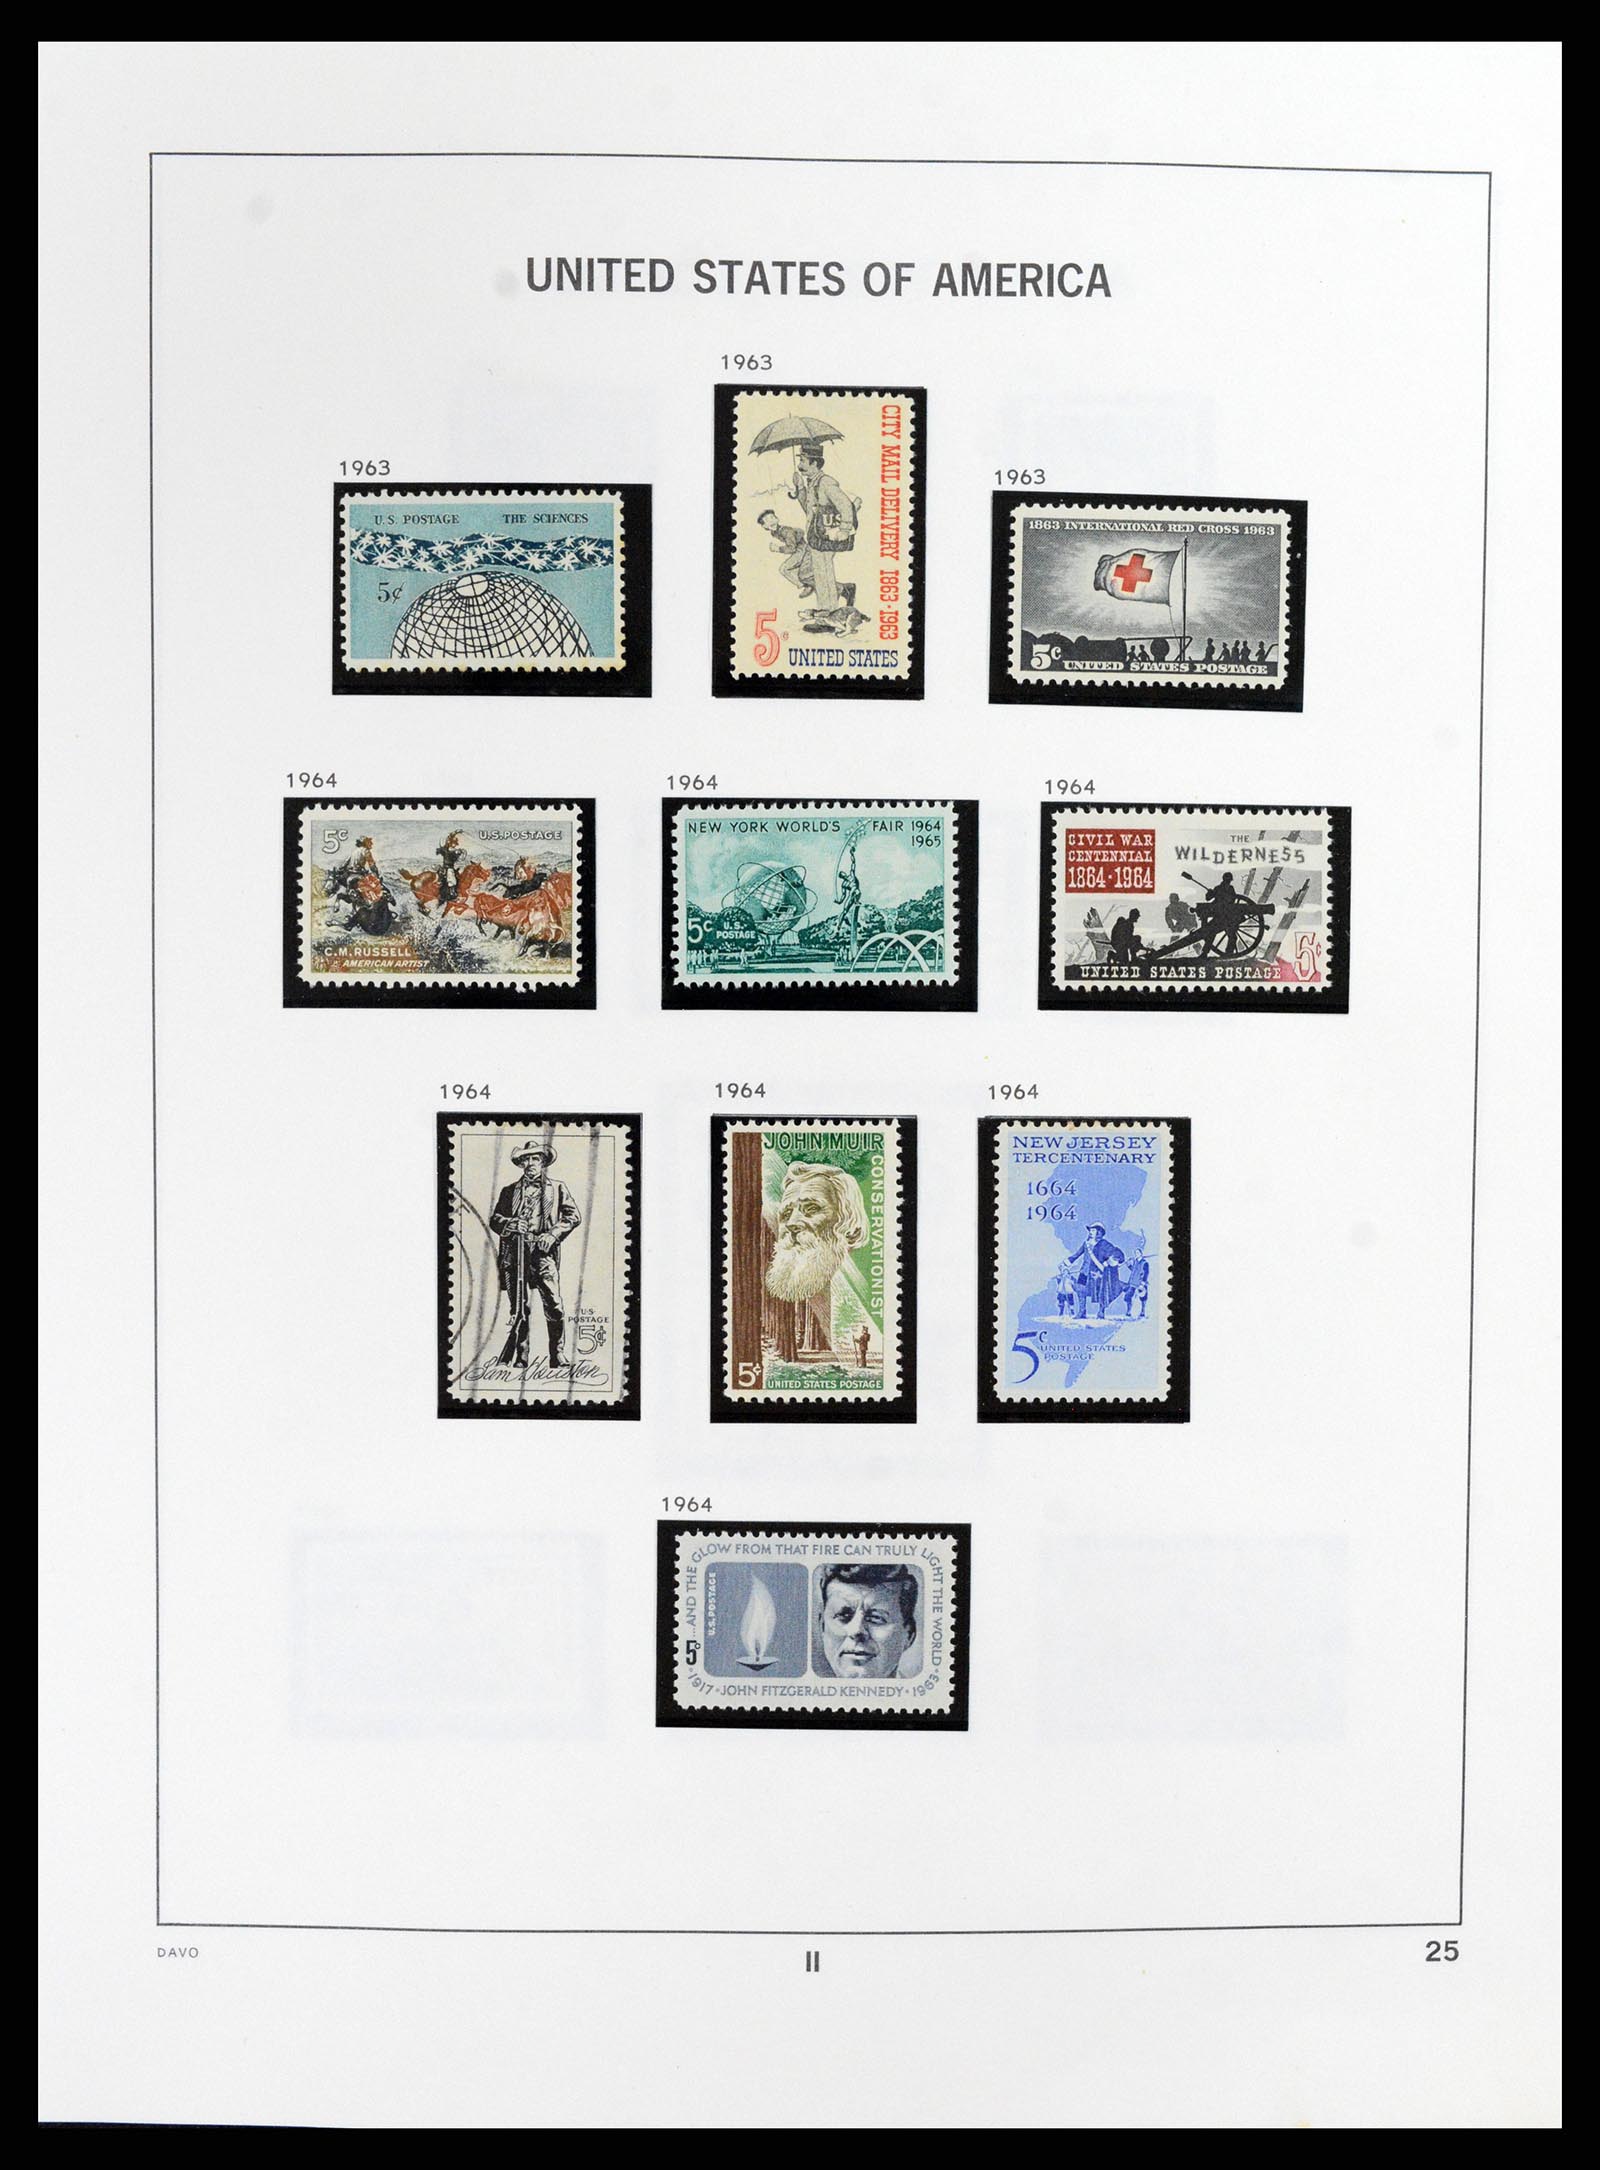 37357 029 - Stamp collection 37357 USA 1945-2009.